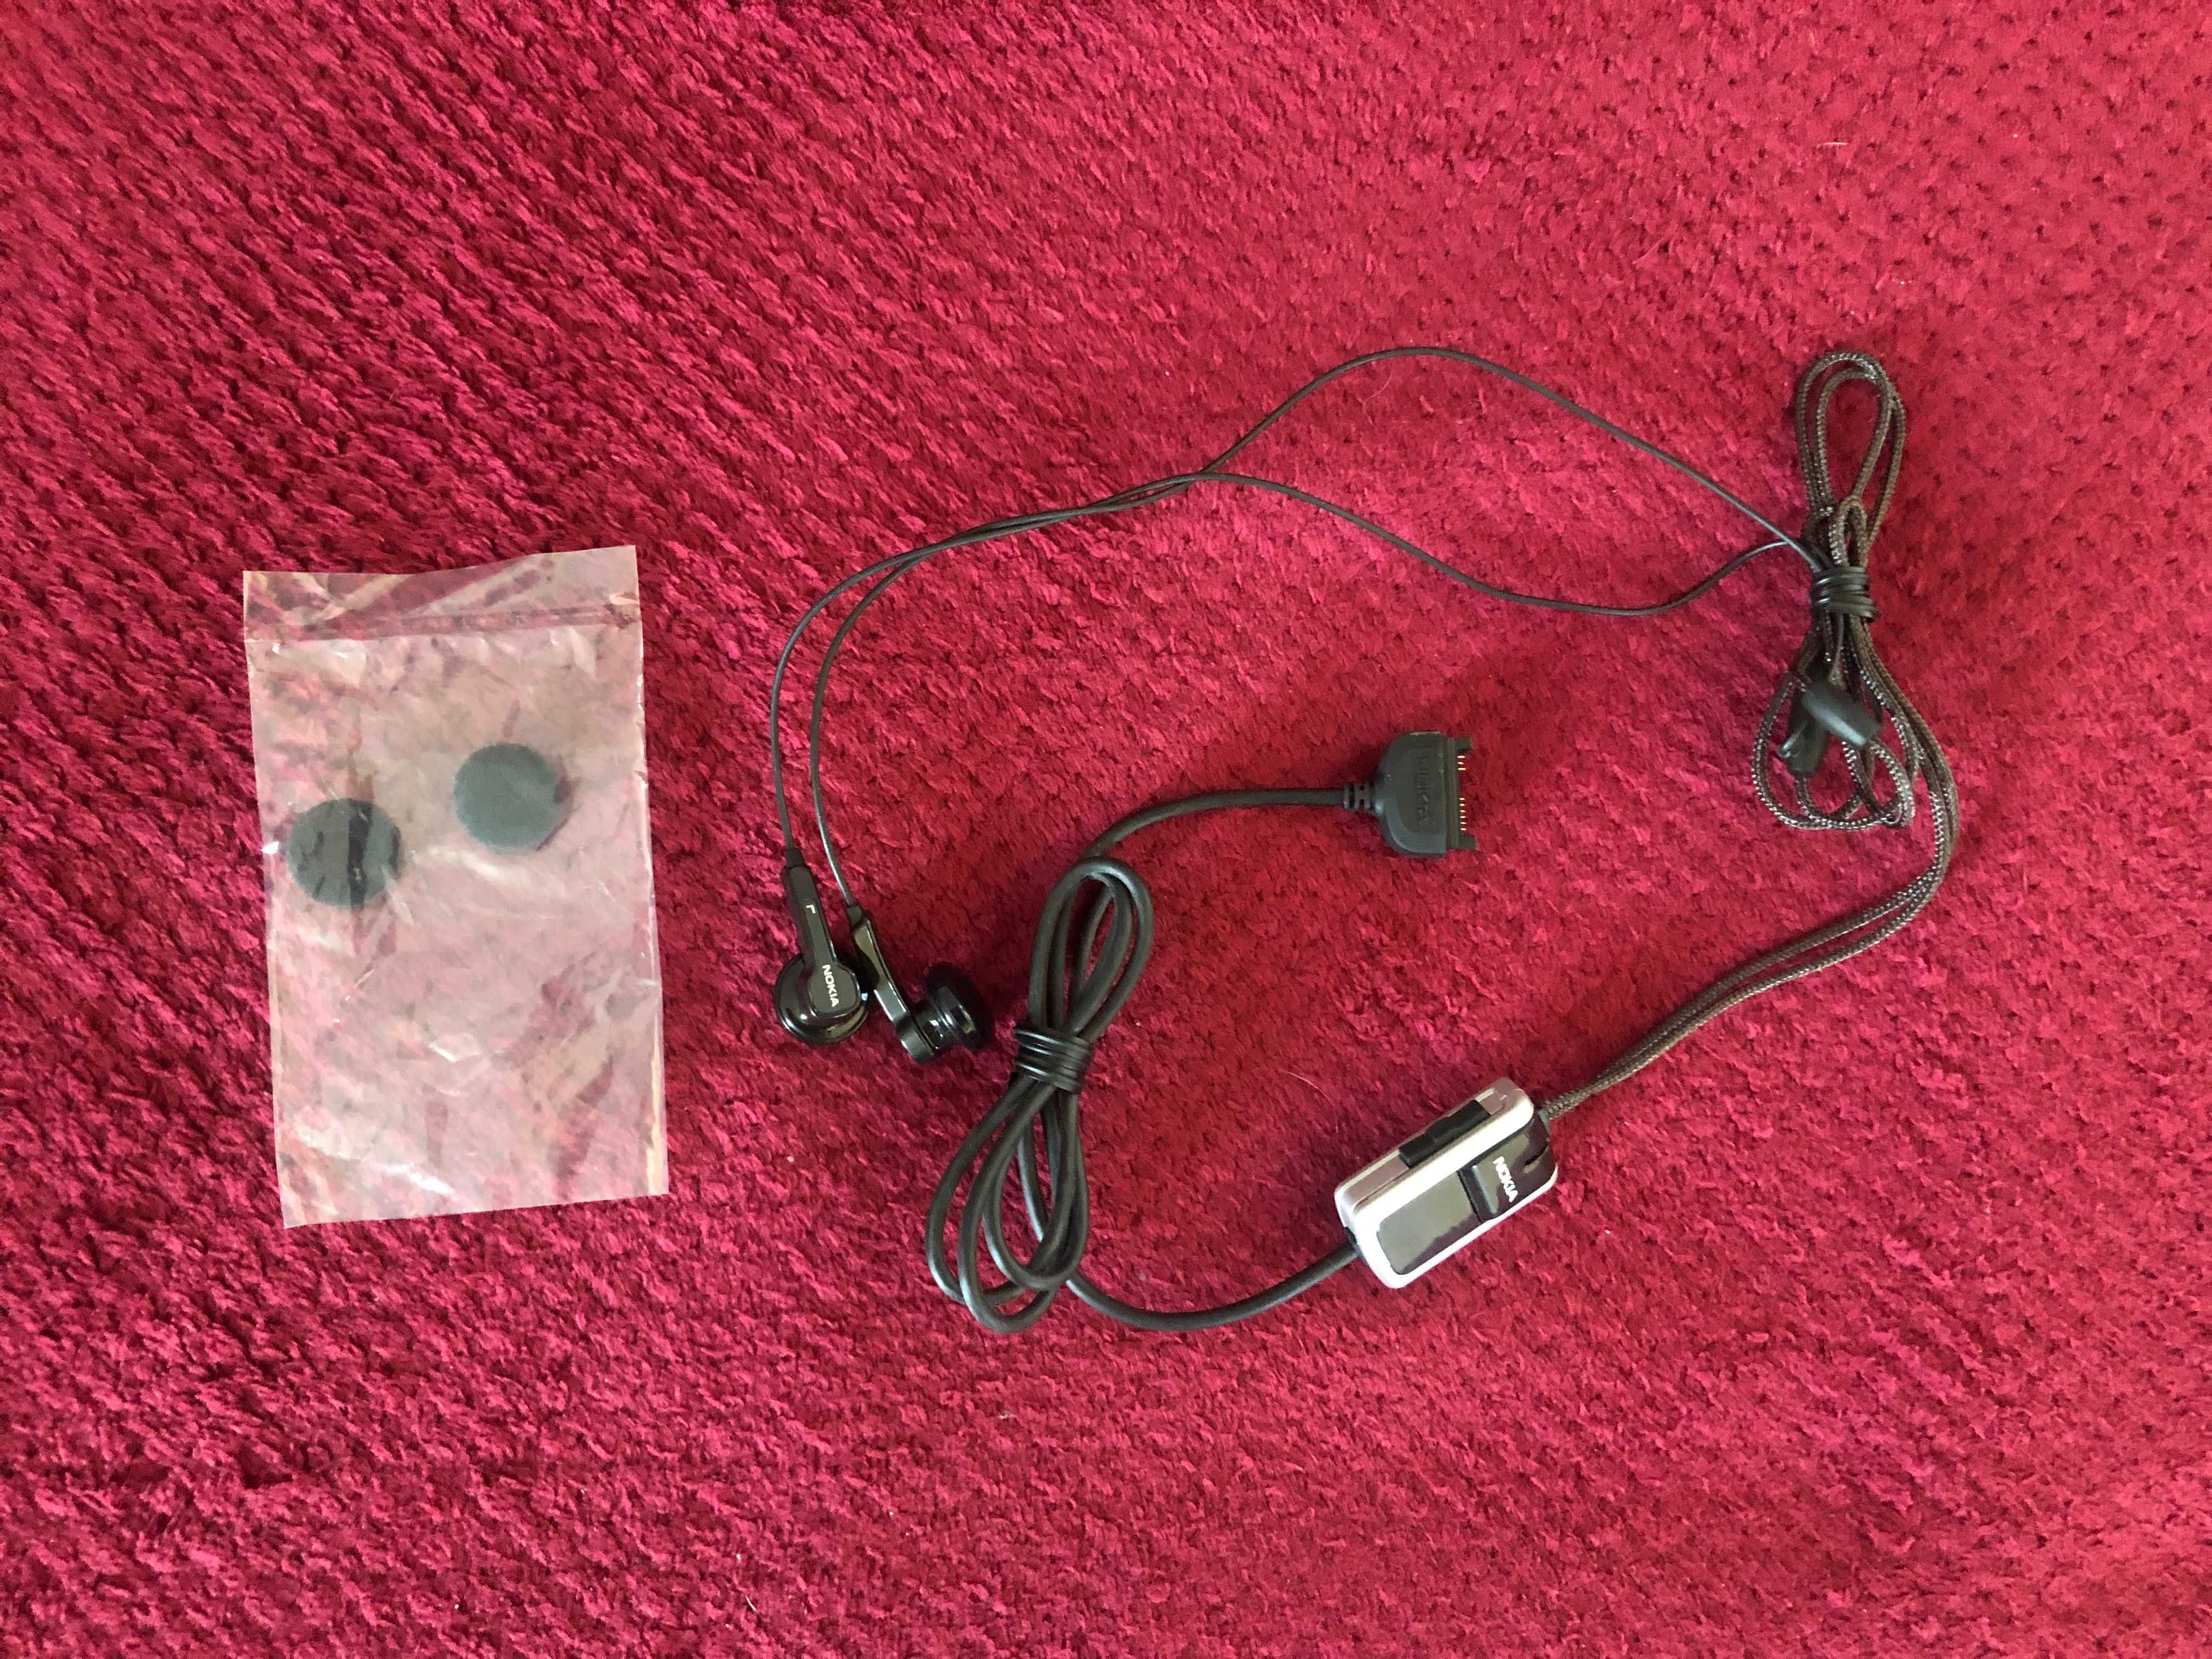 słuchawki NOKIA przewodowe opcja odbioru połączeń